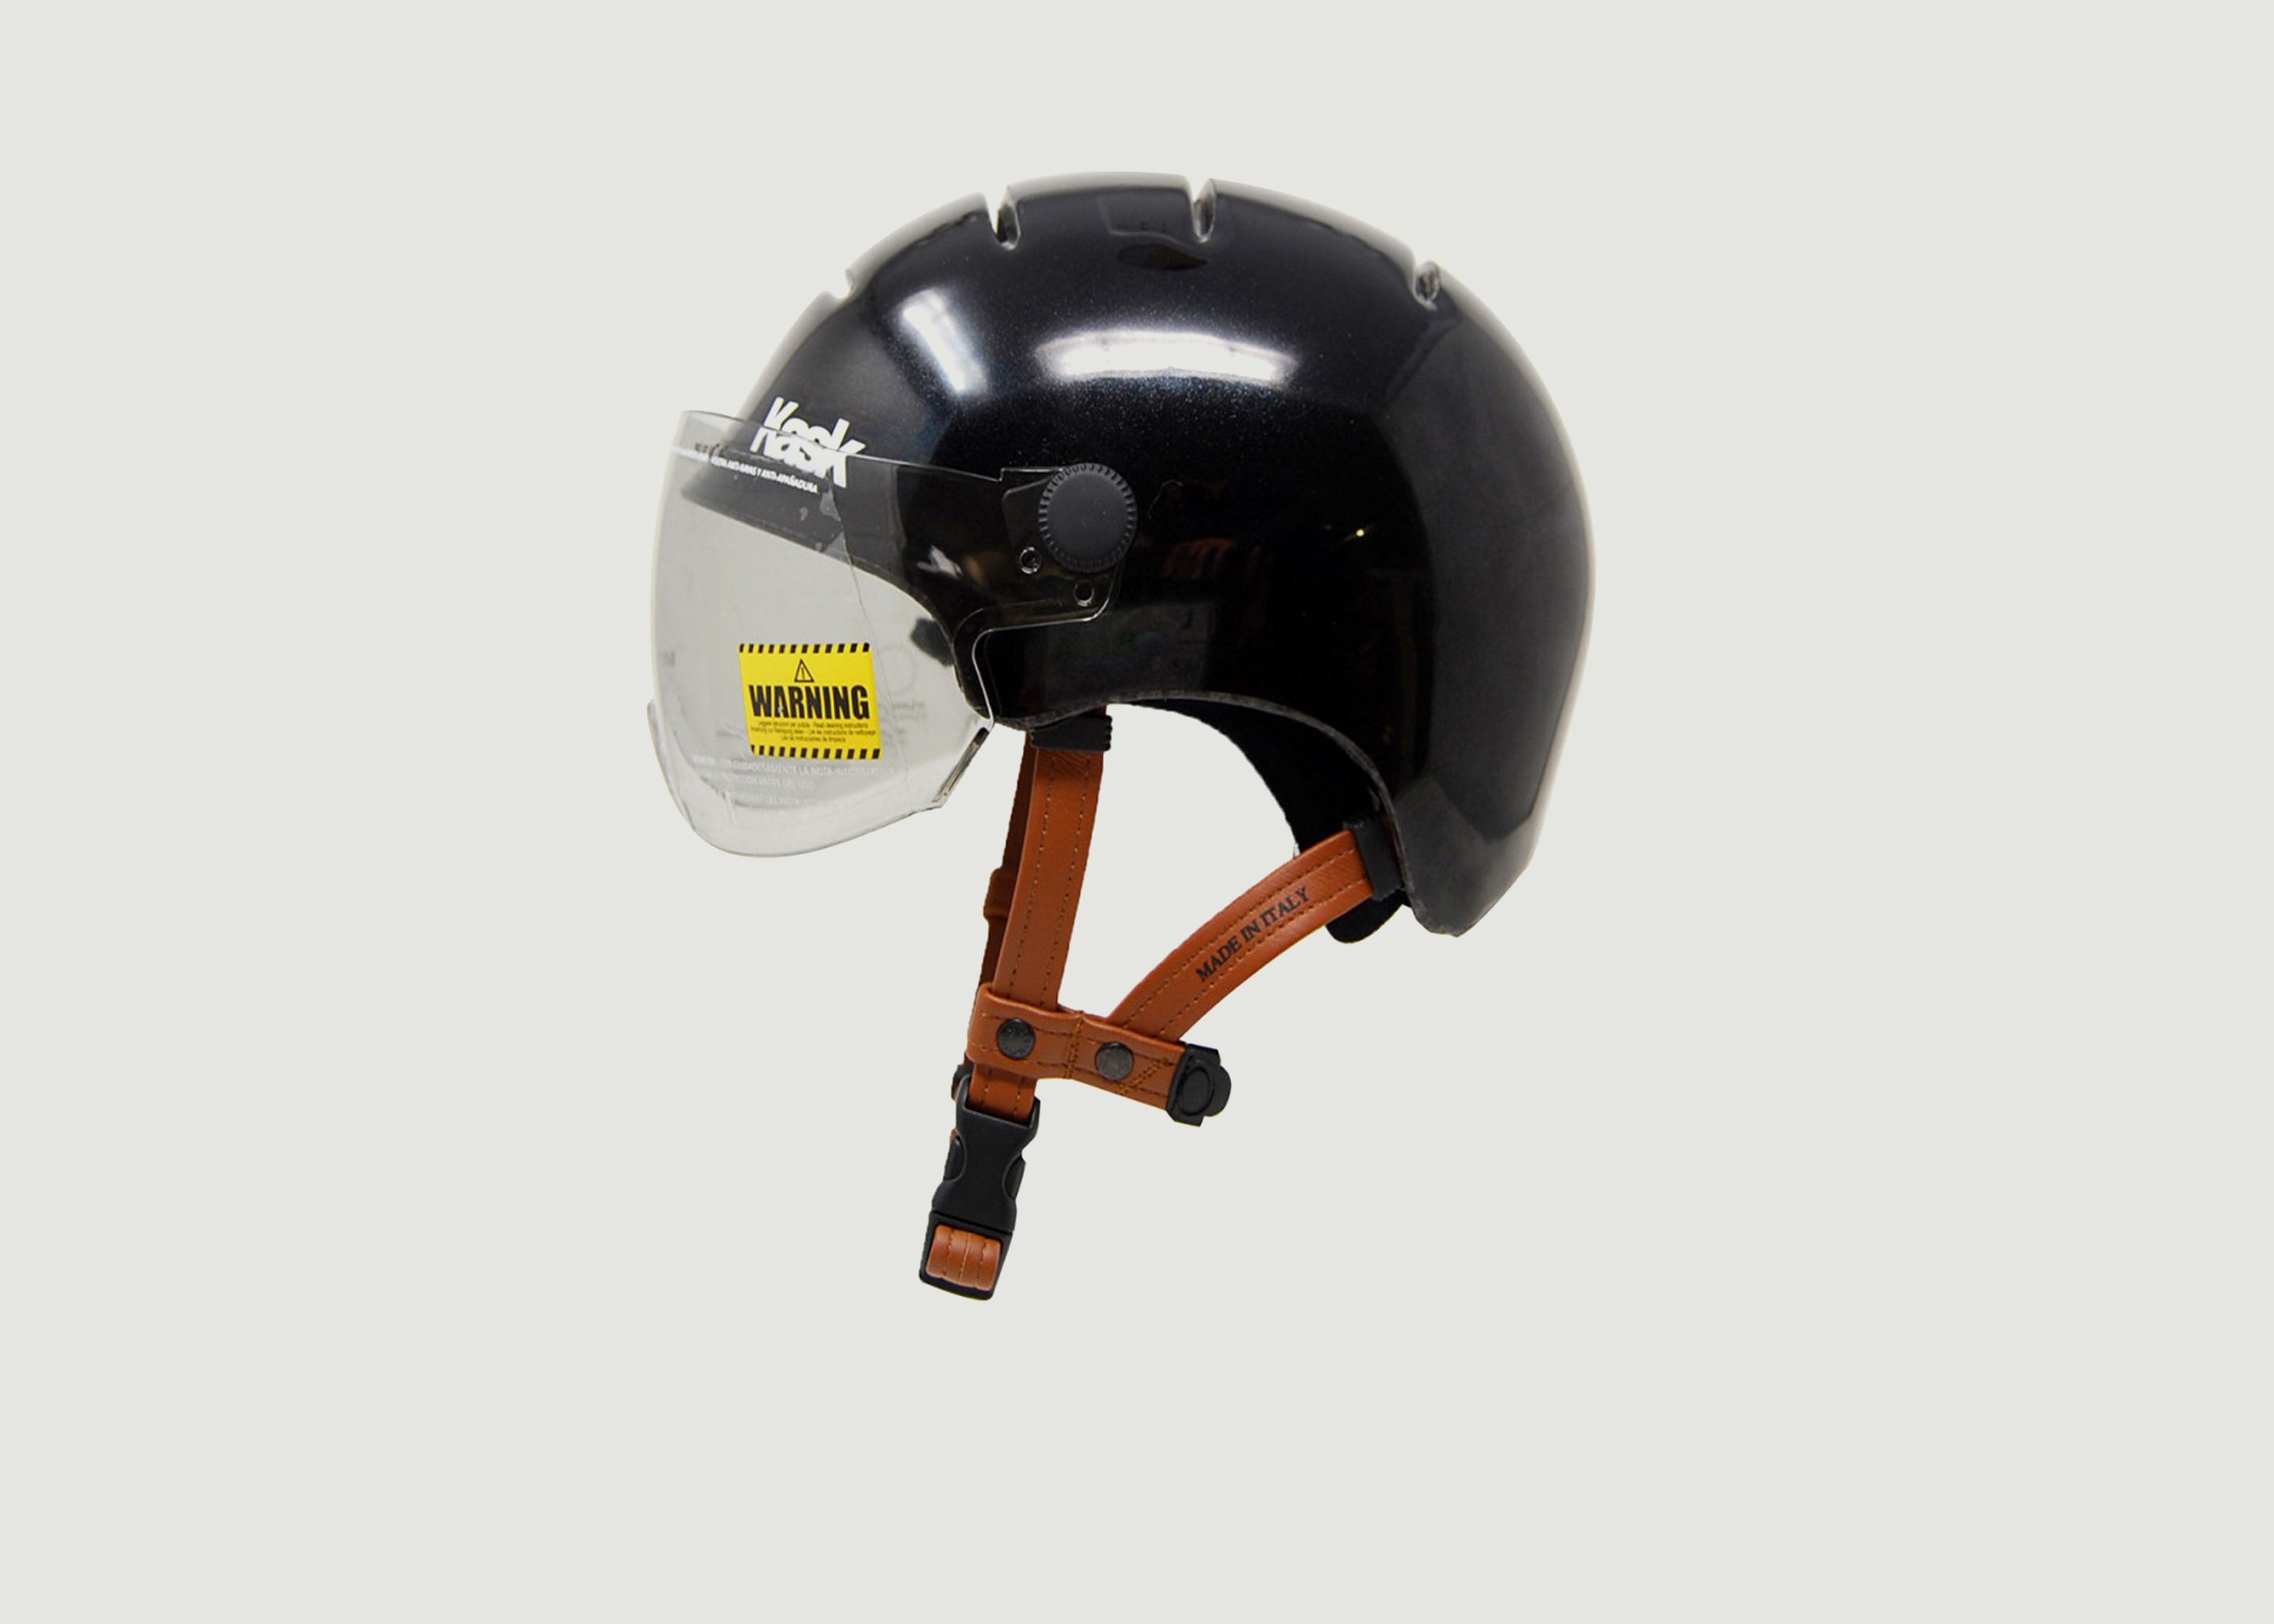 Urban Lifestyle Bicycle Helmet - Kask